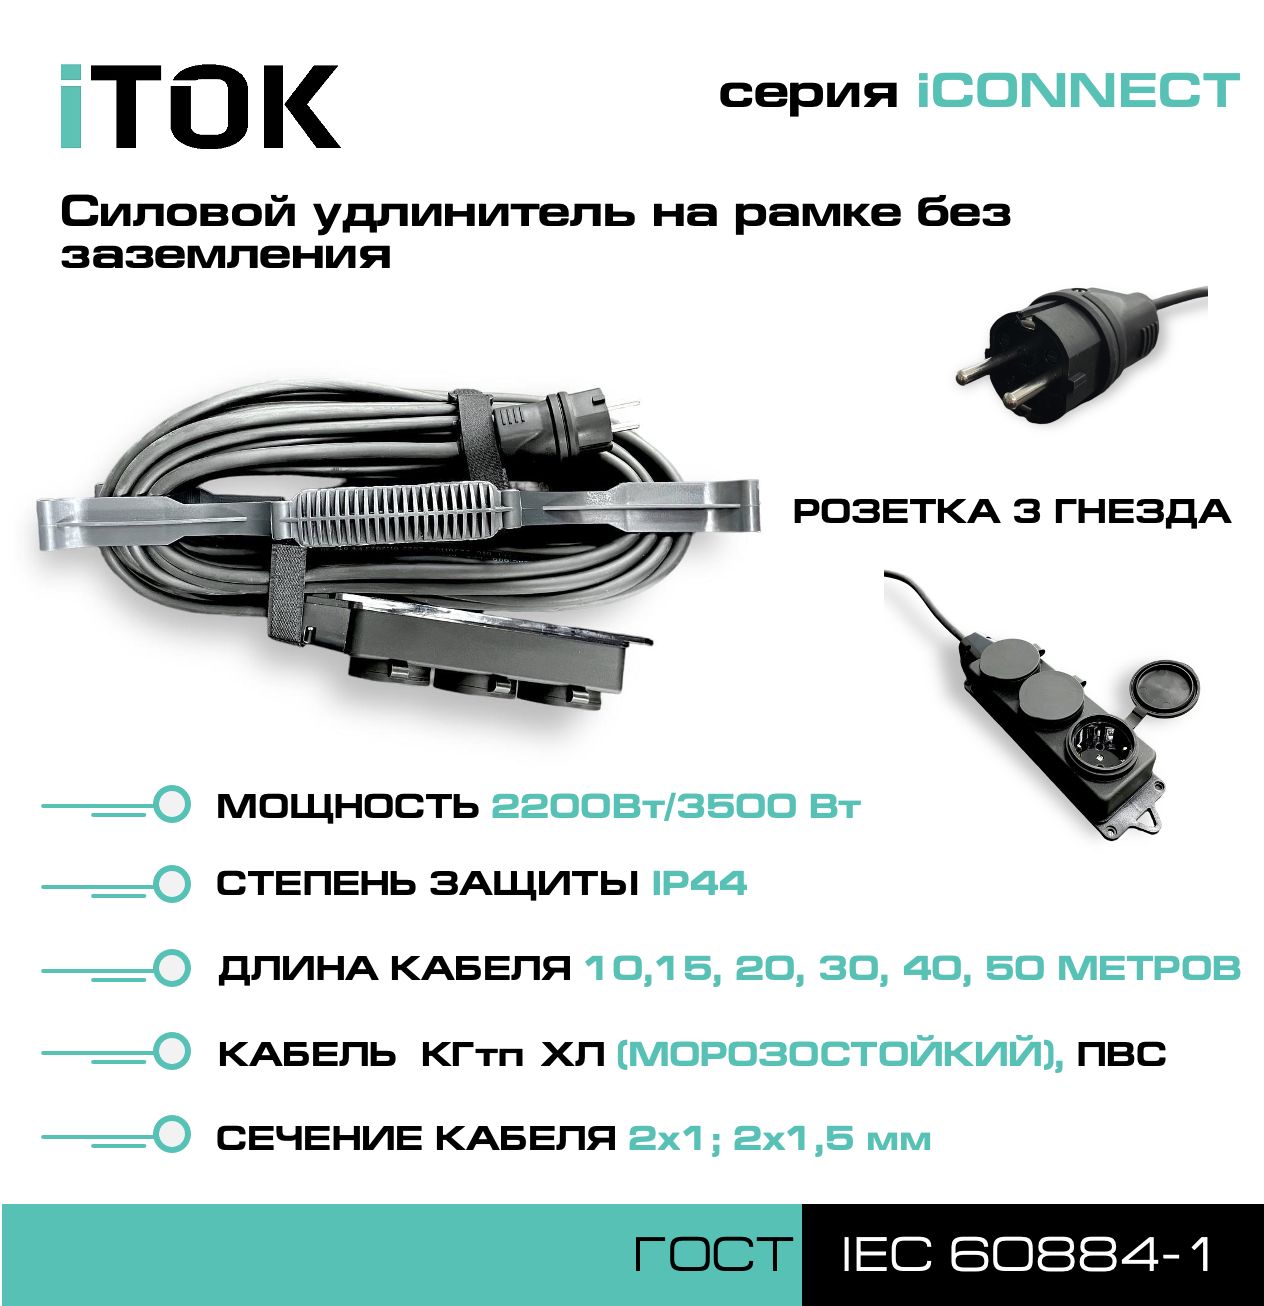 Удлинитель на рамке без земли серии iTOK iCONNECT КГтп-ХЛ 2х1,5 мм 3 гнезда IP44 10 м фигурный пазл в рамке